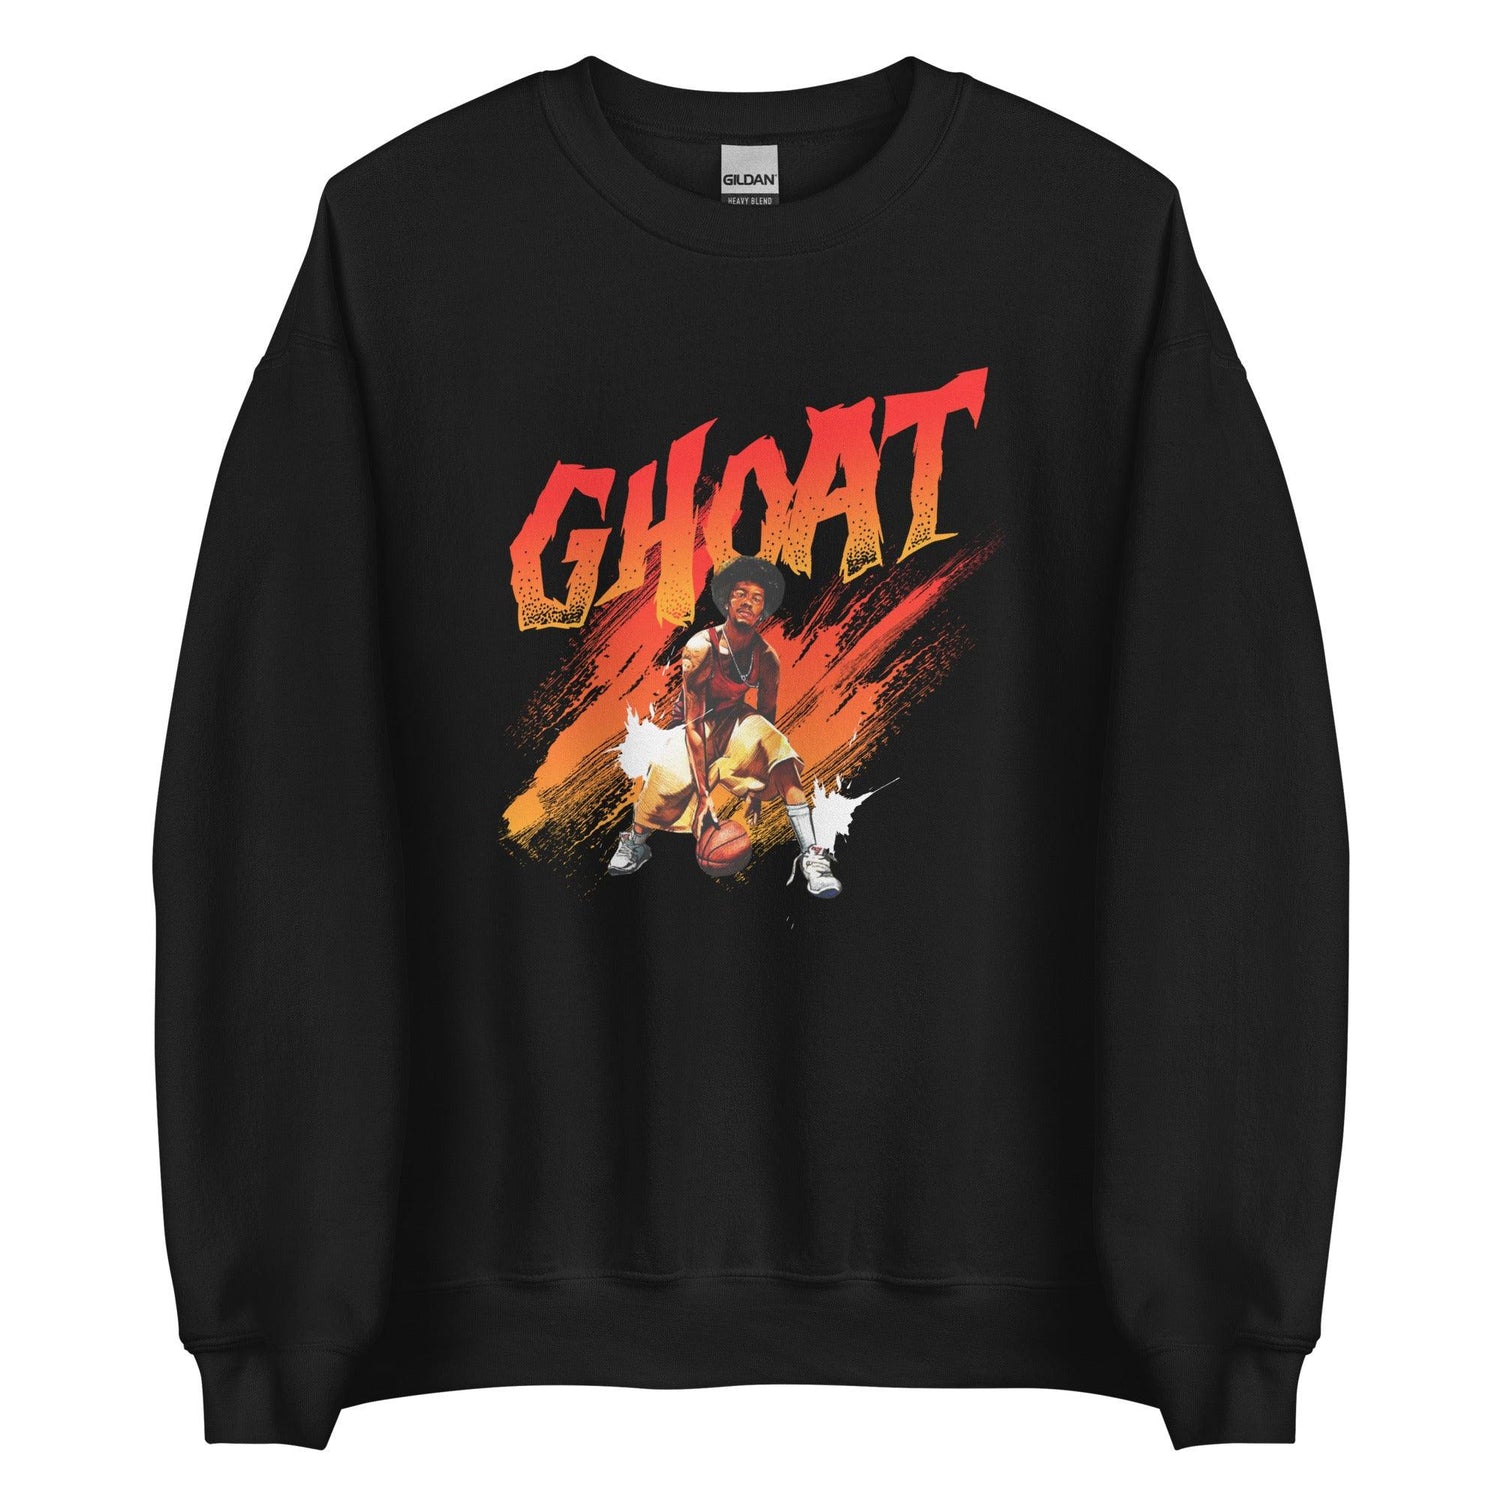 Hot Sauce "Ghoat" Sweatshirt - Fan Arch